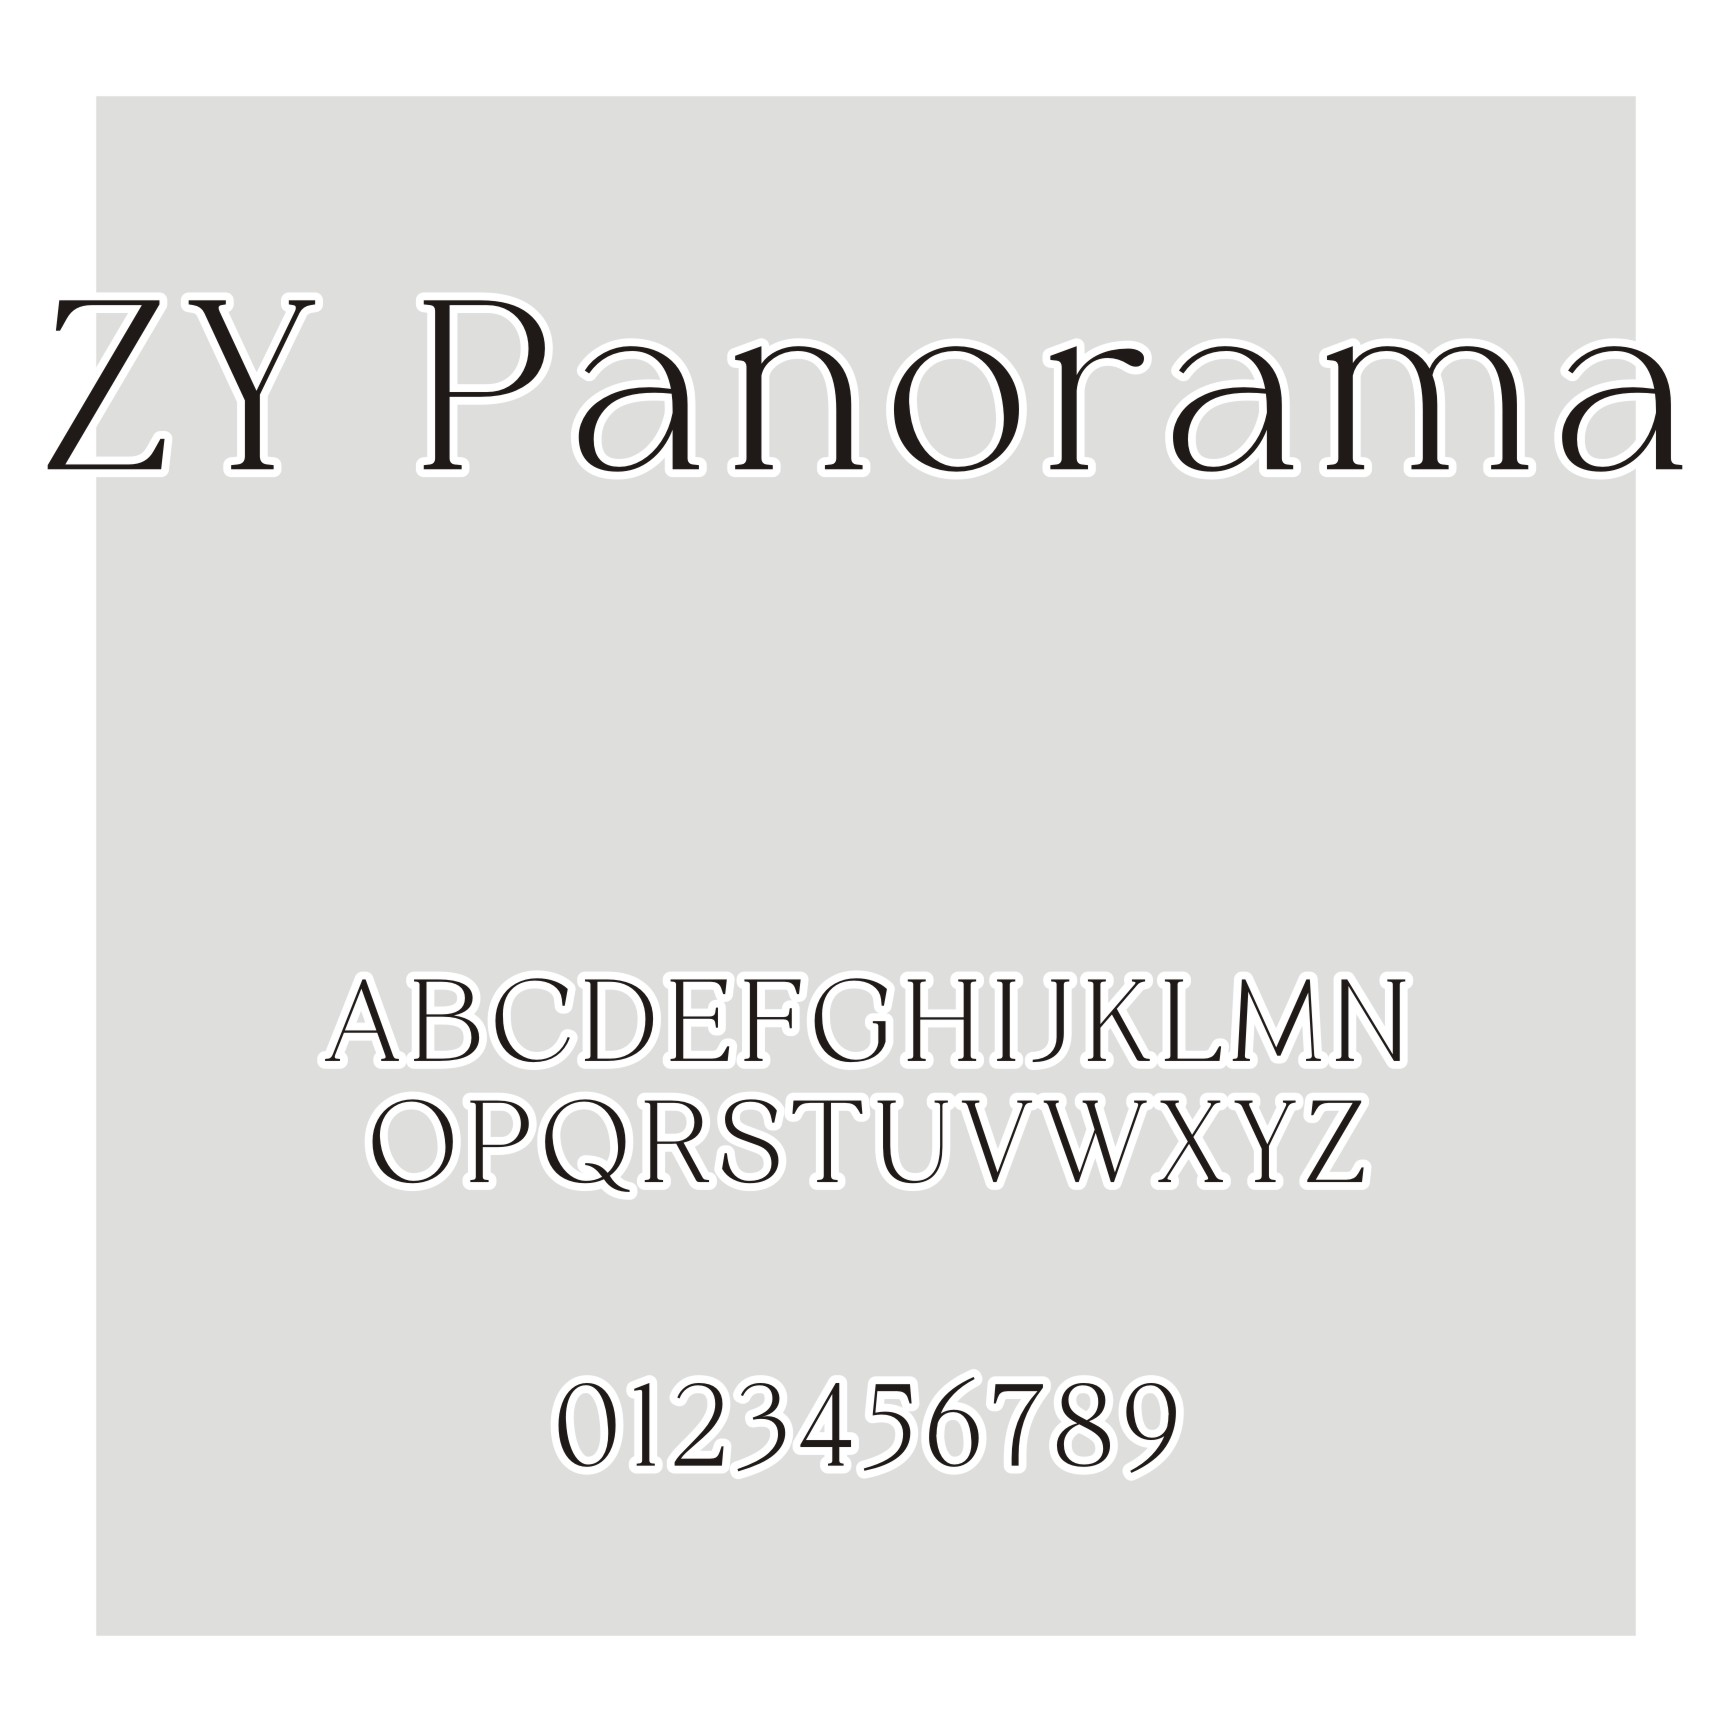 ZY Panorama